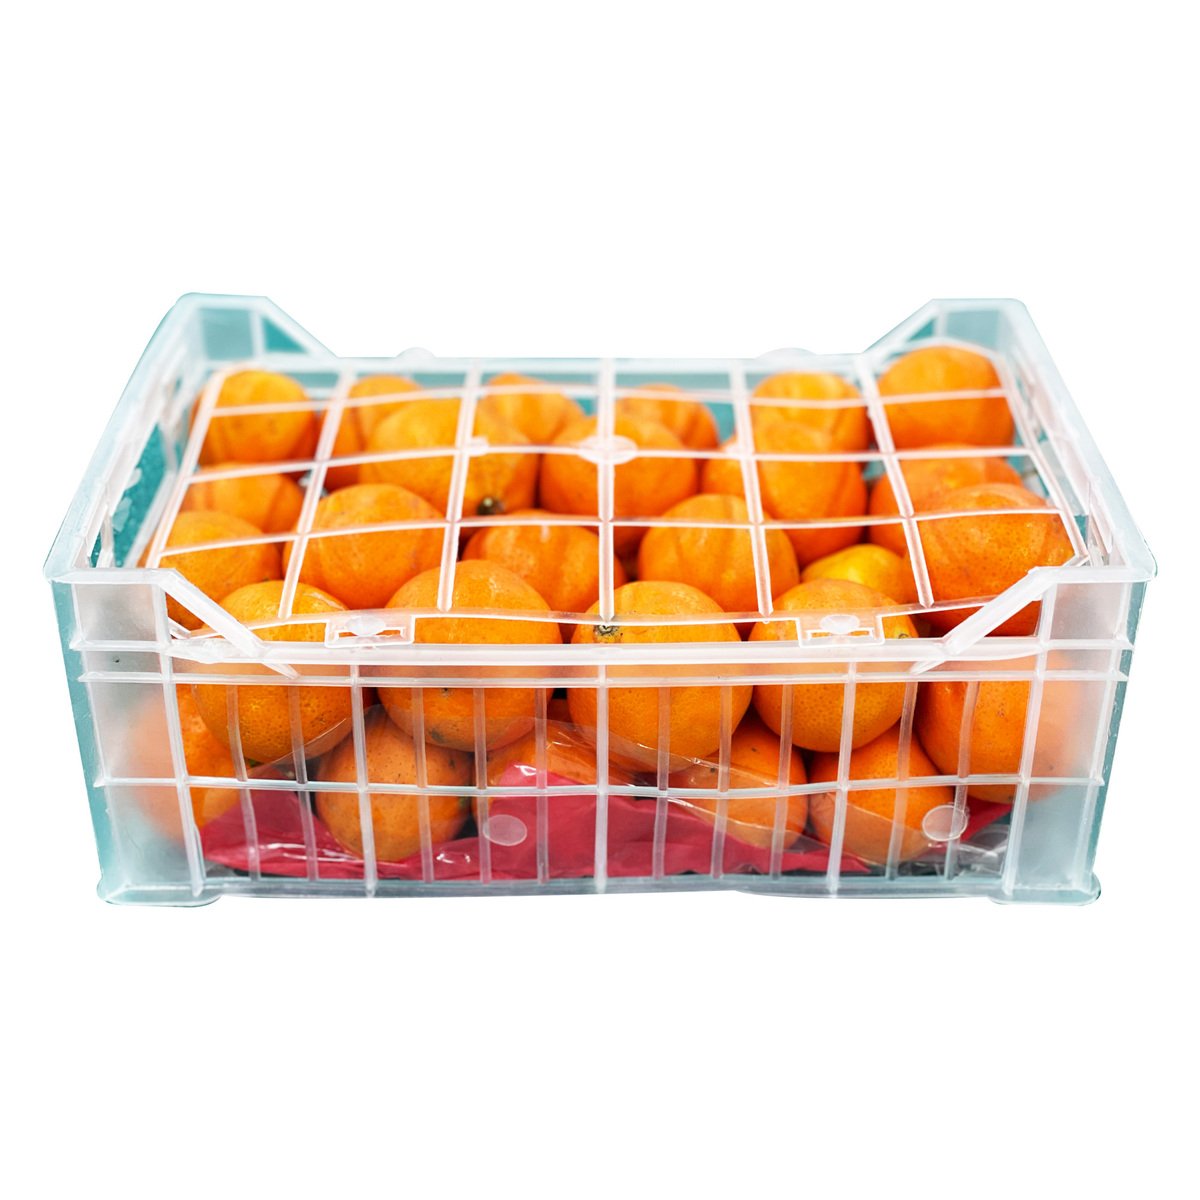 Mandarin Lebanon 1 Box